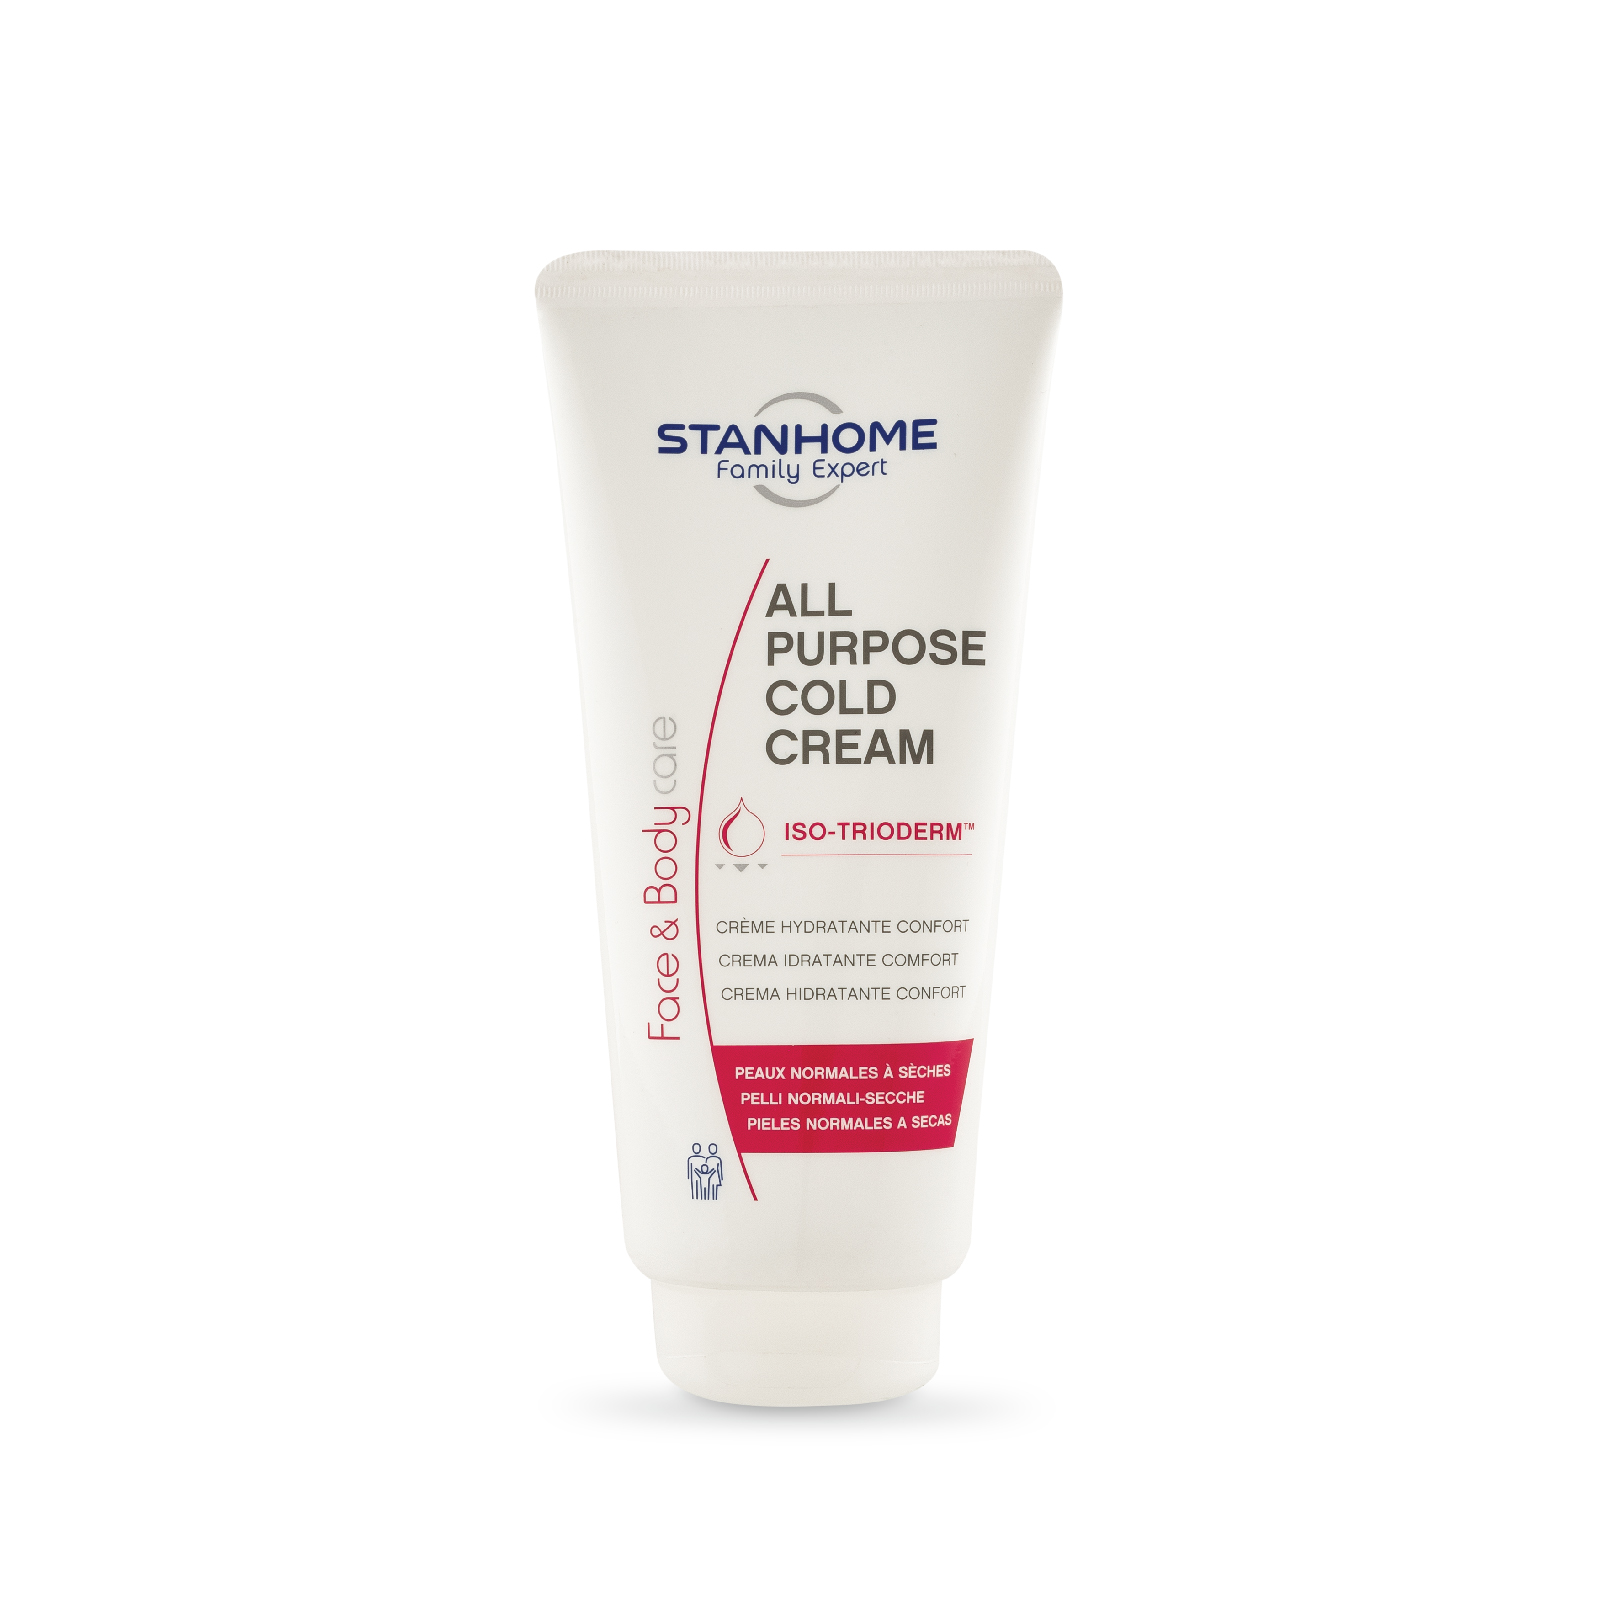 Giảm giá Kem dưỡng ẩm cấp nước cho da thường, da khô và nhạy cảm Stanhome  All Purpose Cold Cream 200ml - Mua Thông Minh